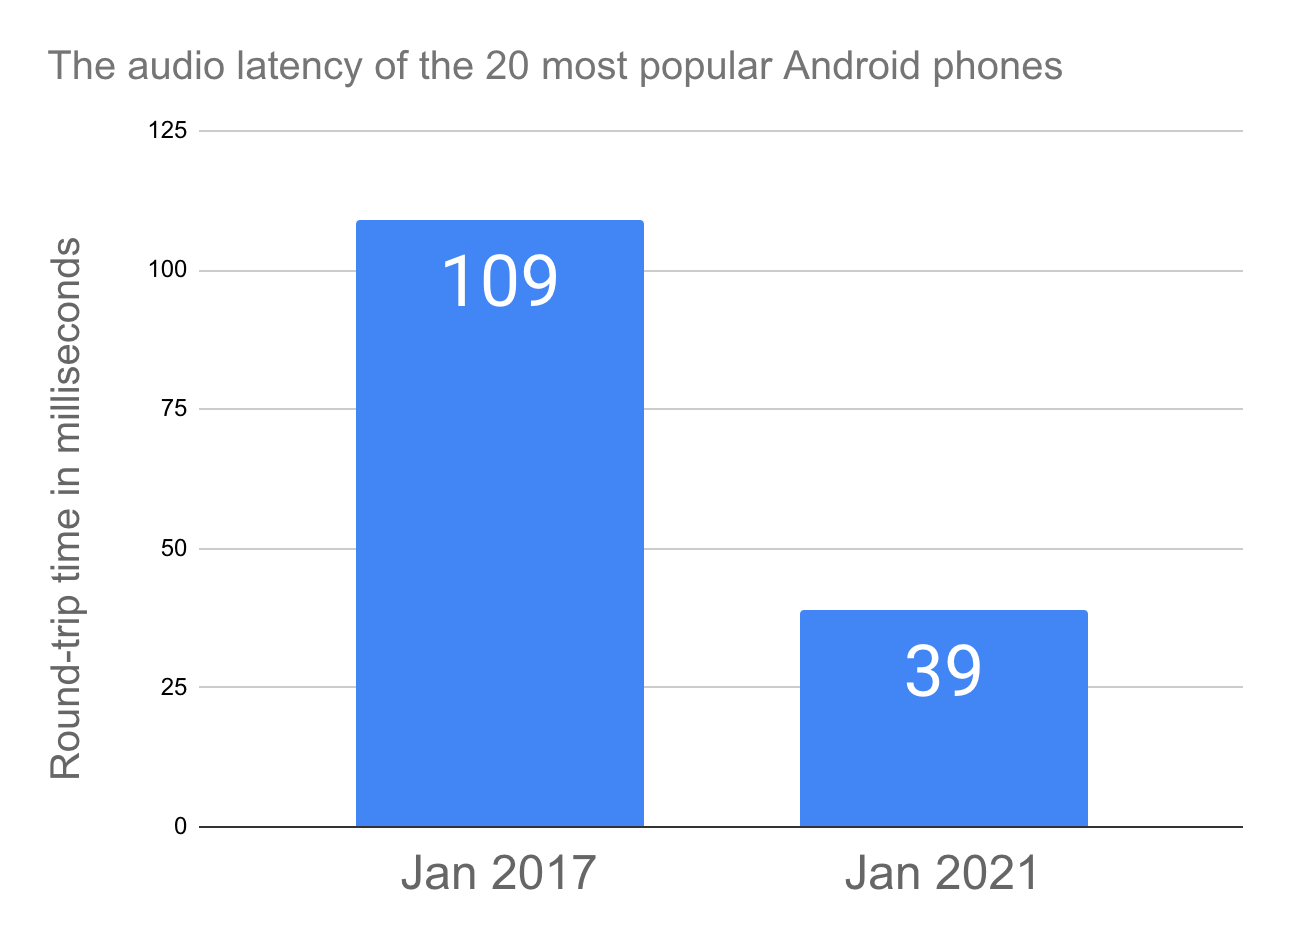 가장 인기 있는 Android 휴대전화 20종의 평균 오디오 지연 시간을 보여주는 막대 그래프. 2017년 1월에는 오디오 지연 시간이 109ms였습니다. 2021년 1월에는 오디오 지연 시간이 39ms였습니다.